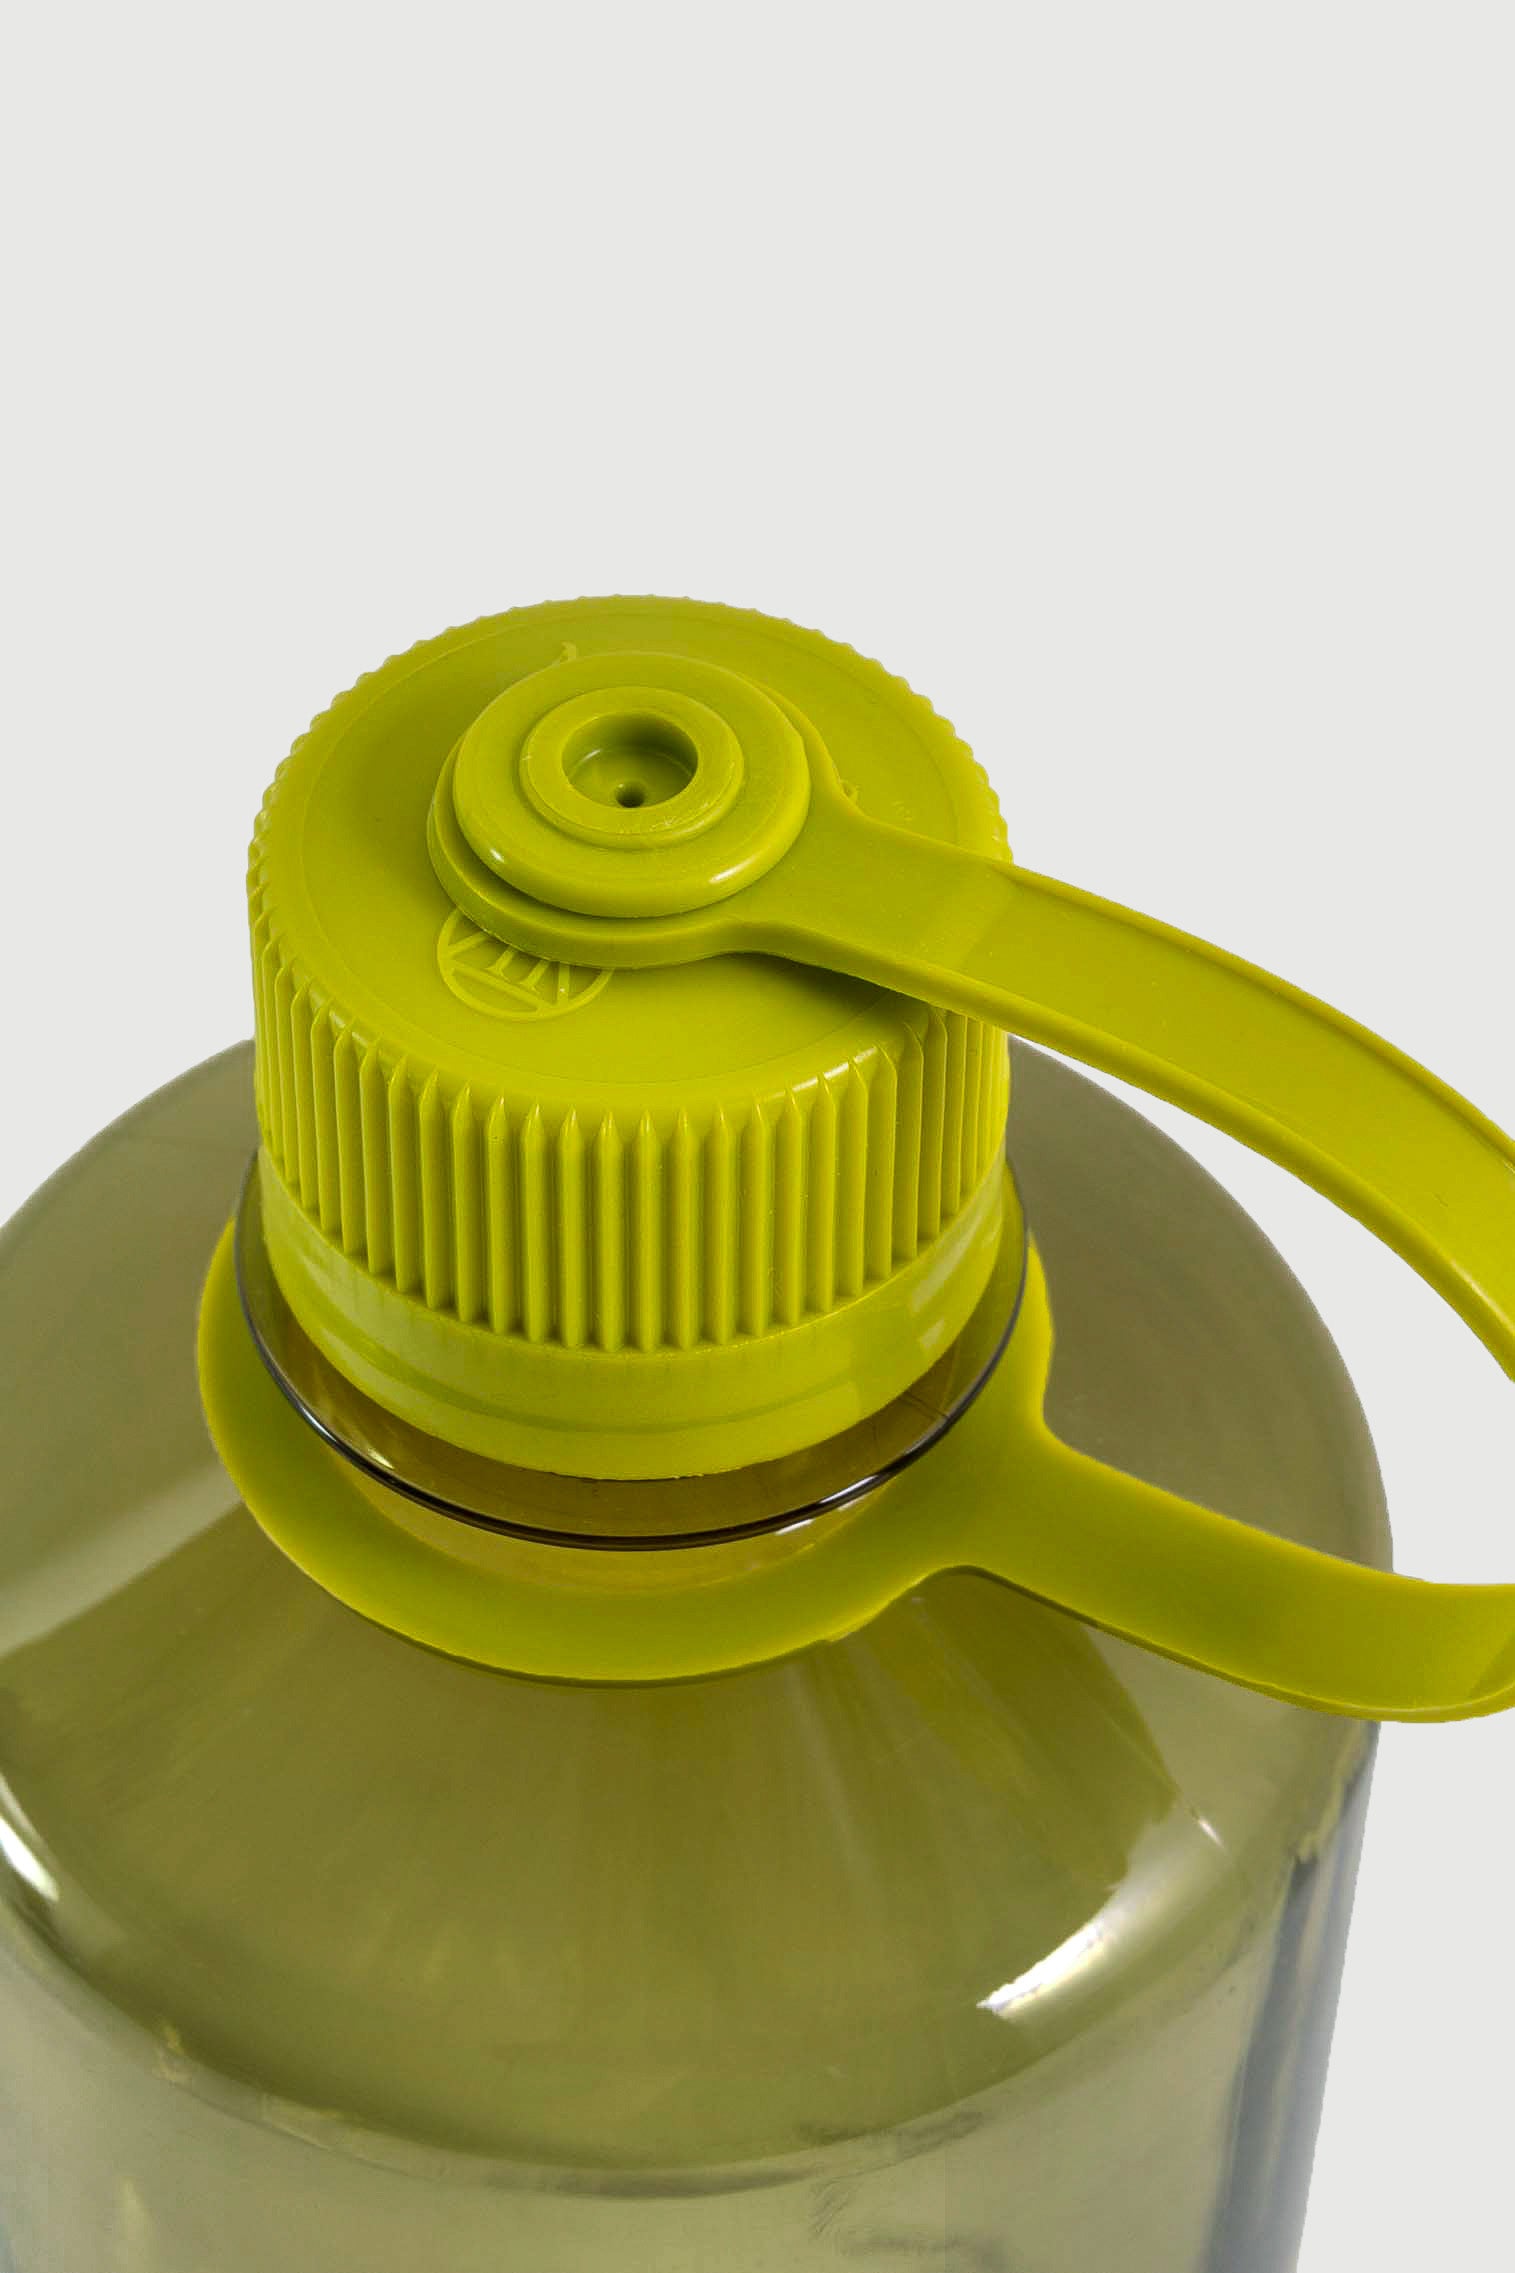 Cap Detail - Mossy green 32oz Nalgene bottle. Comme Si x Nalgene